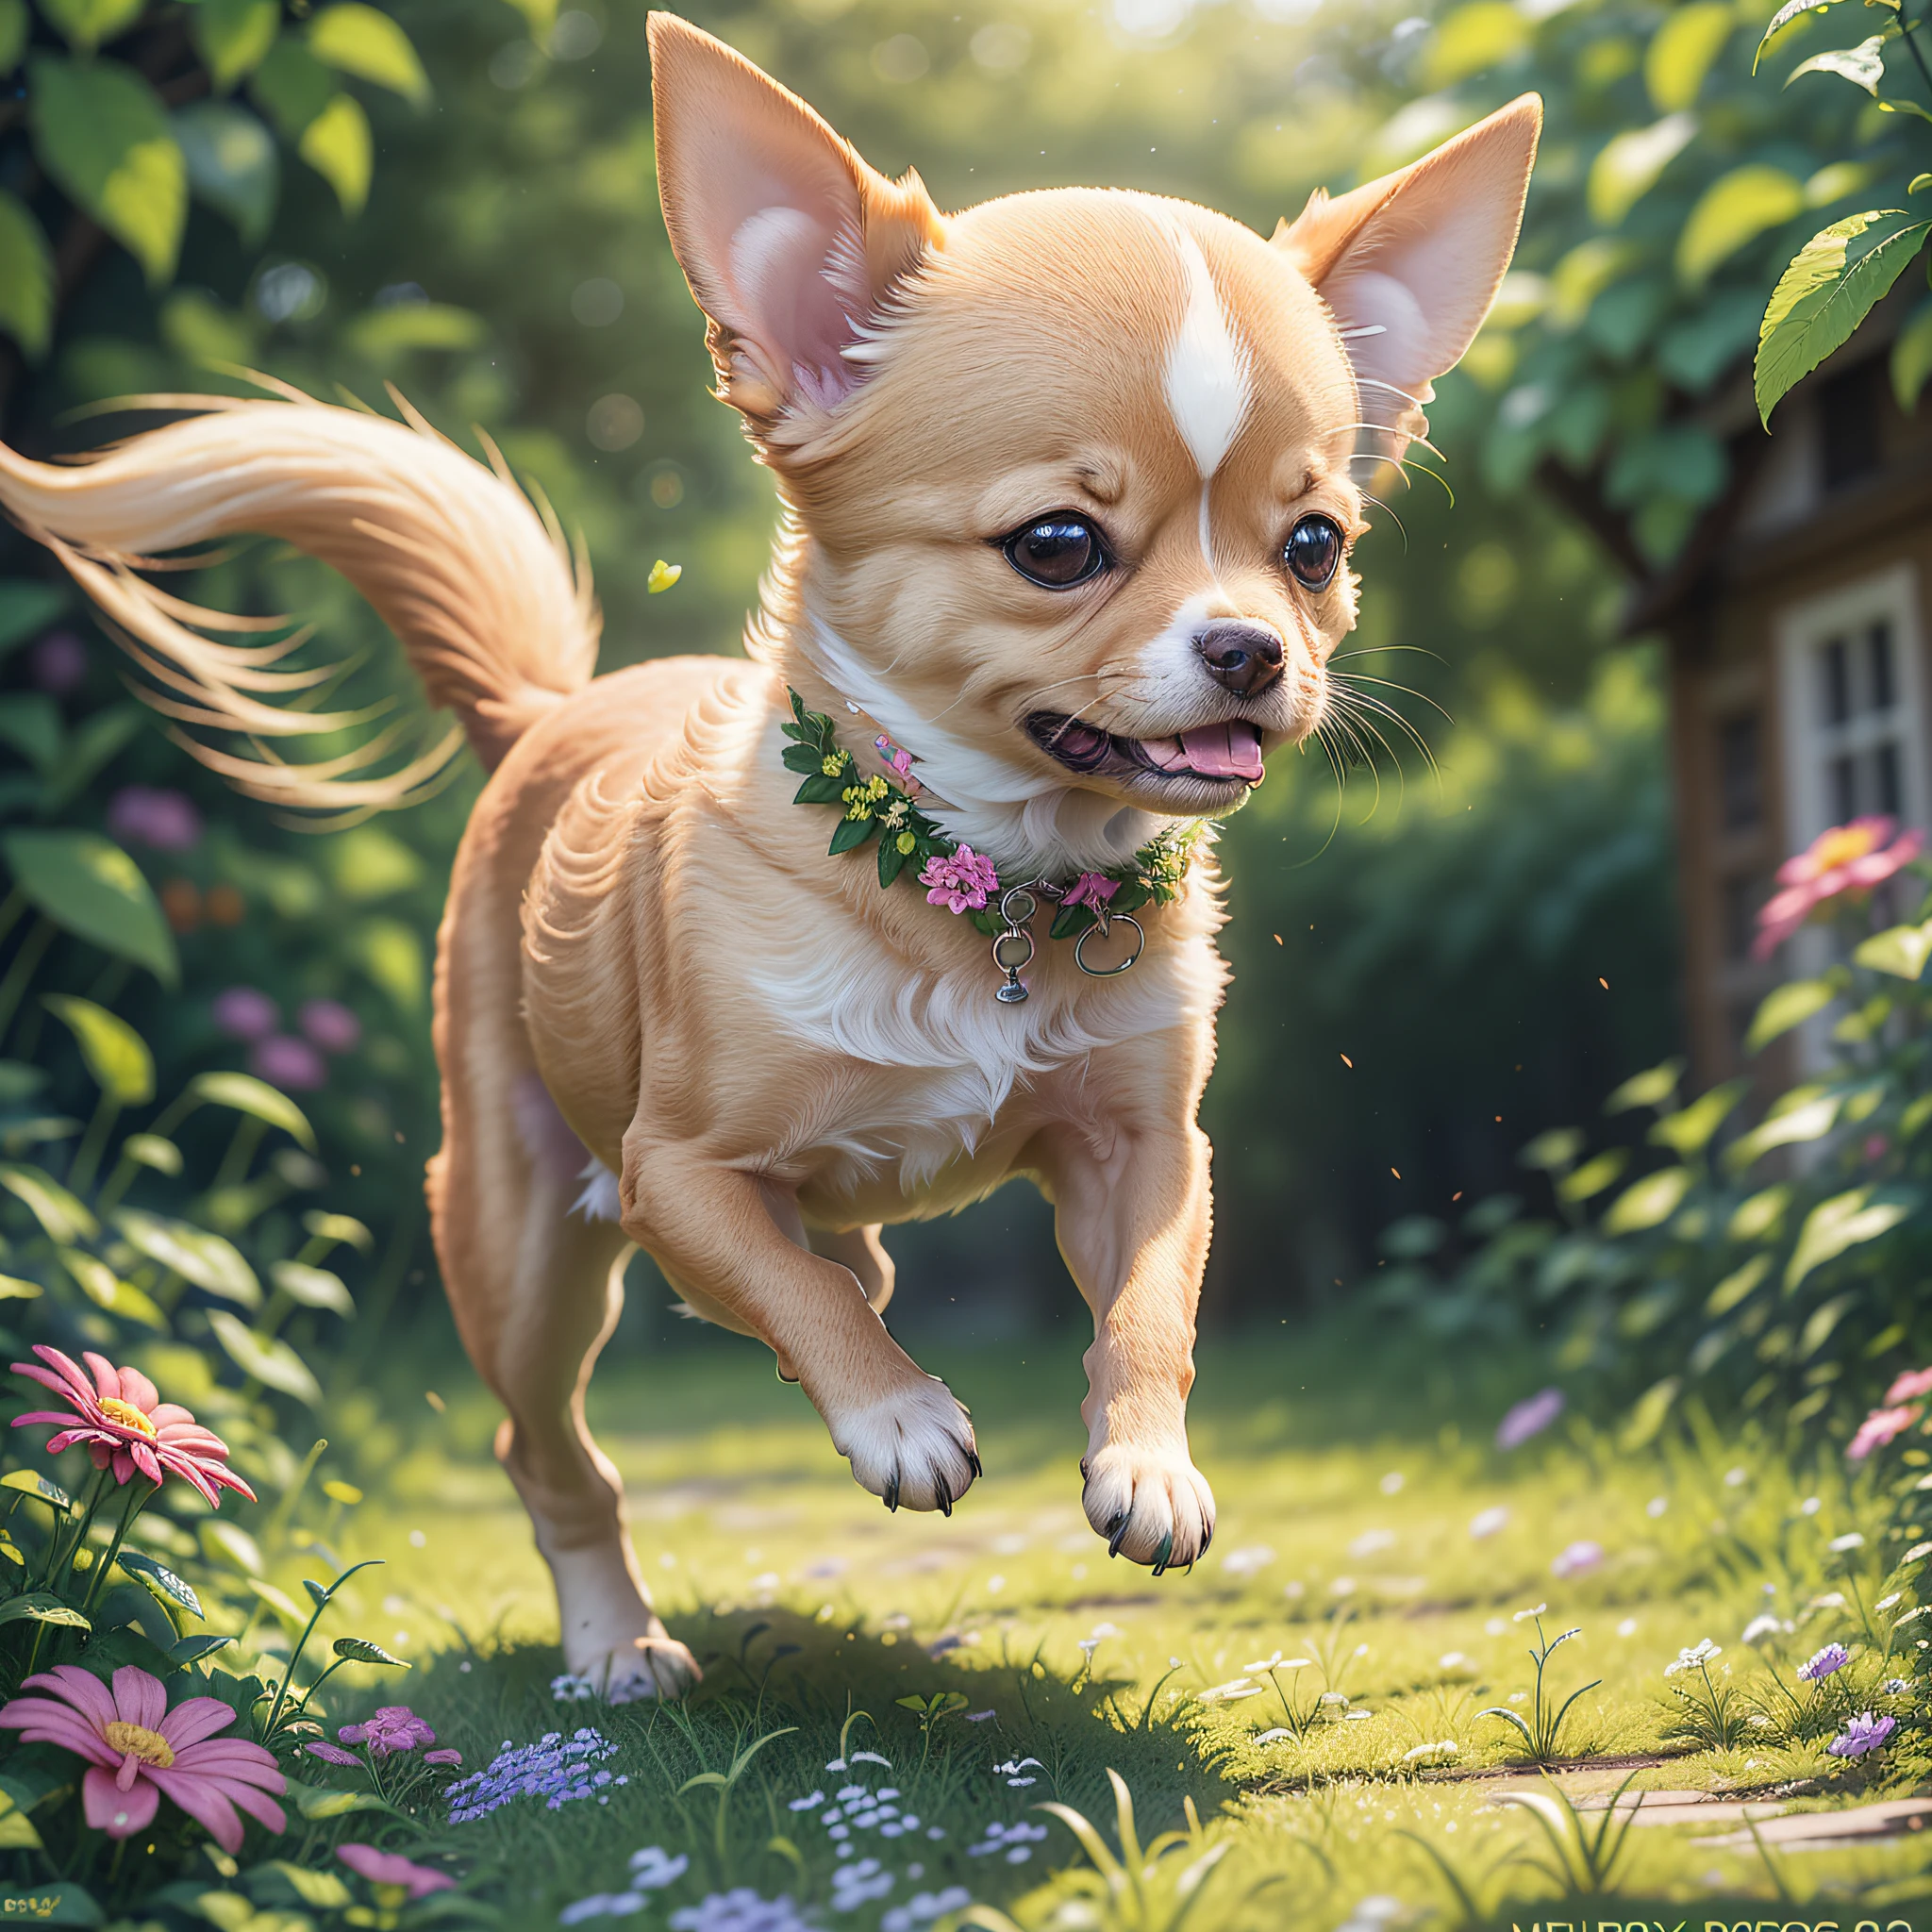 A cute and 행복하다 chihuahua puppy running through a wide garden, 잎이 무성한 나무와 화려한 꽃, 목초지, 행복하다, 행복하다, 완벽한 품질, 명확한 초점 (식당: 0.8), (걸작: 1.2) (현실적인: 1.2) (보케) (최고의 품질) (디테일한 피부: 1.3) (복잡한 세부 사항) (8K) (디테일 아이즈) (날카로운 초점), (행복하다) --자동 --s2